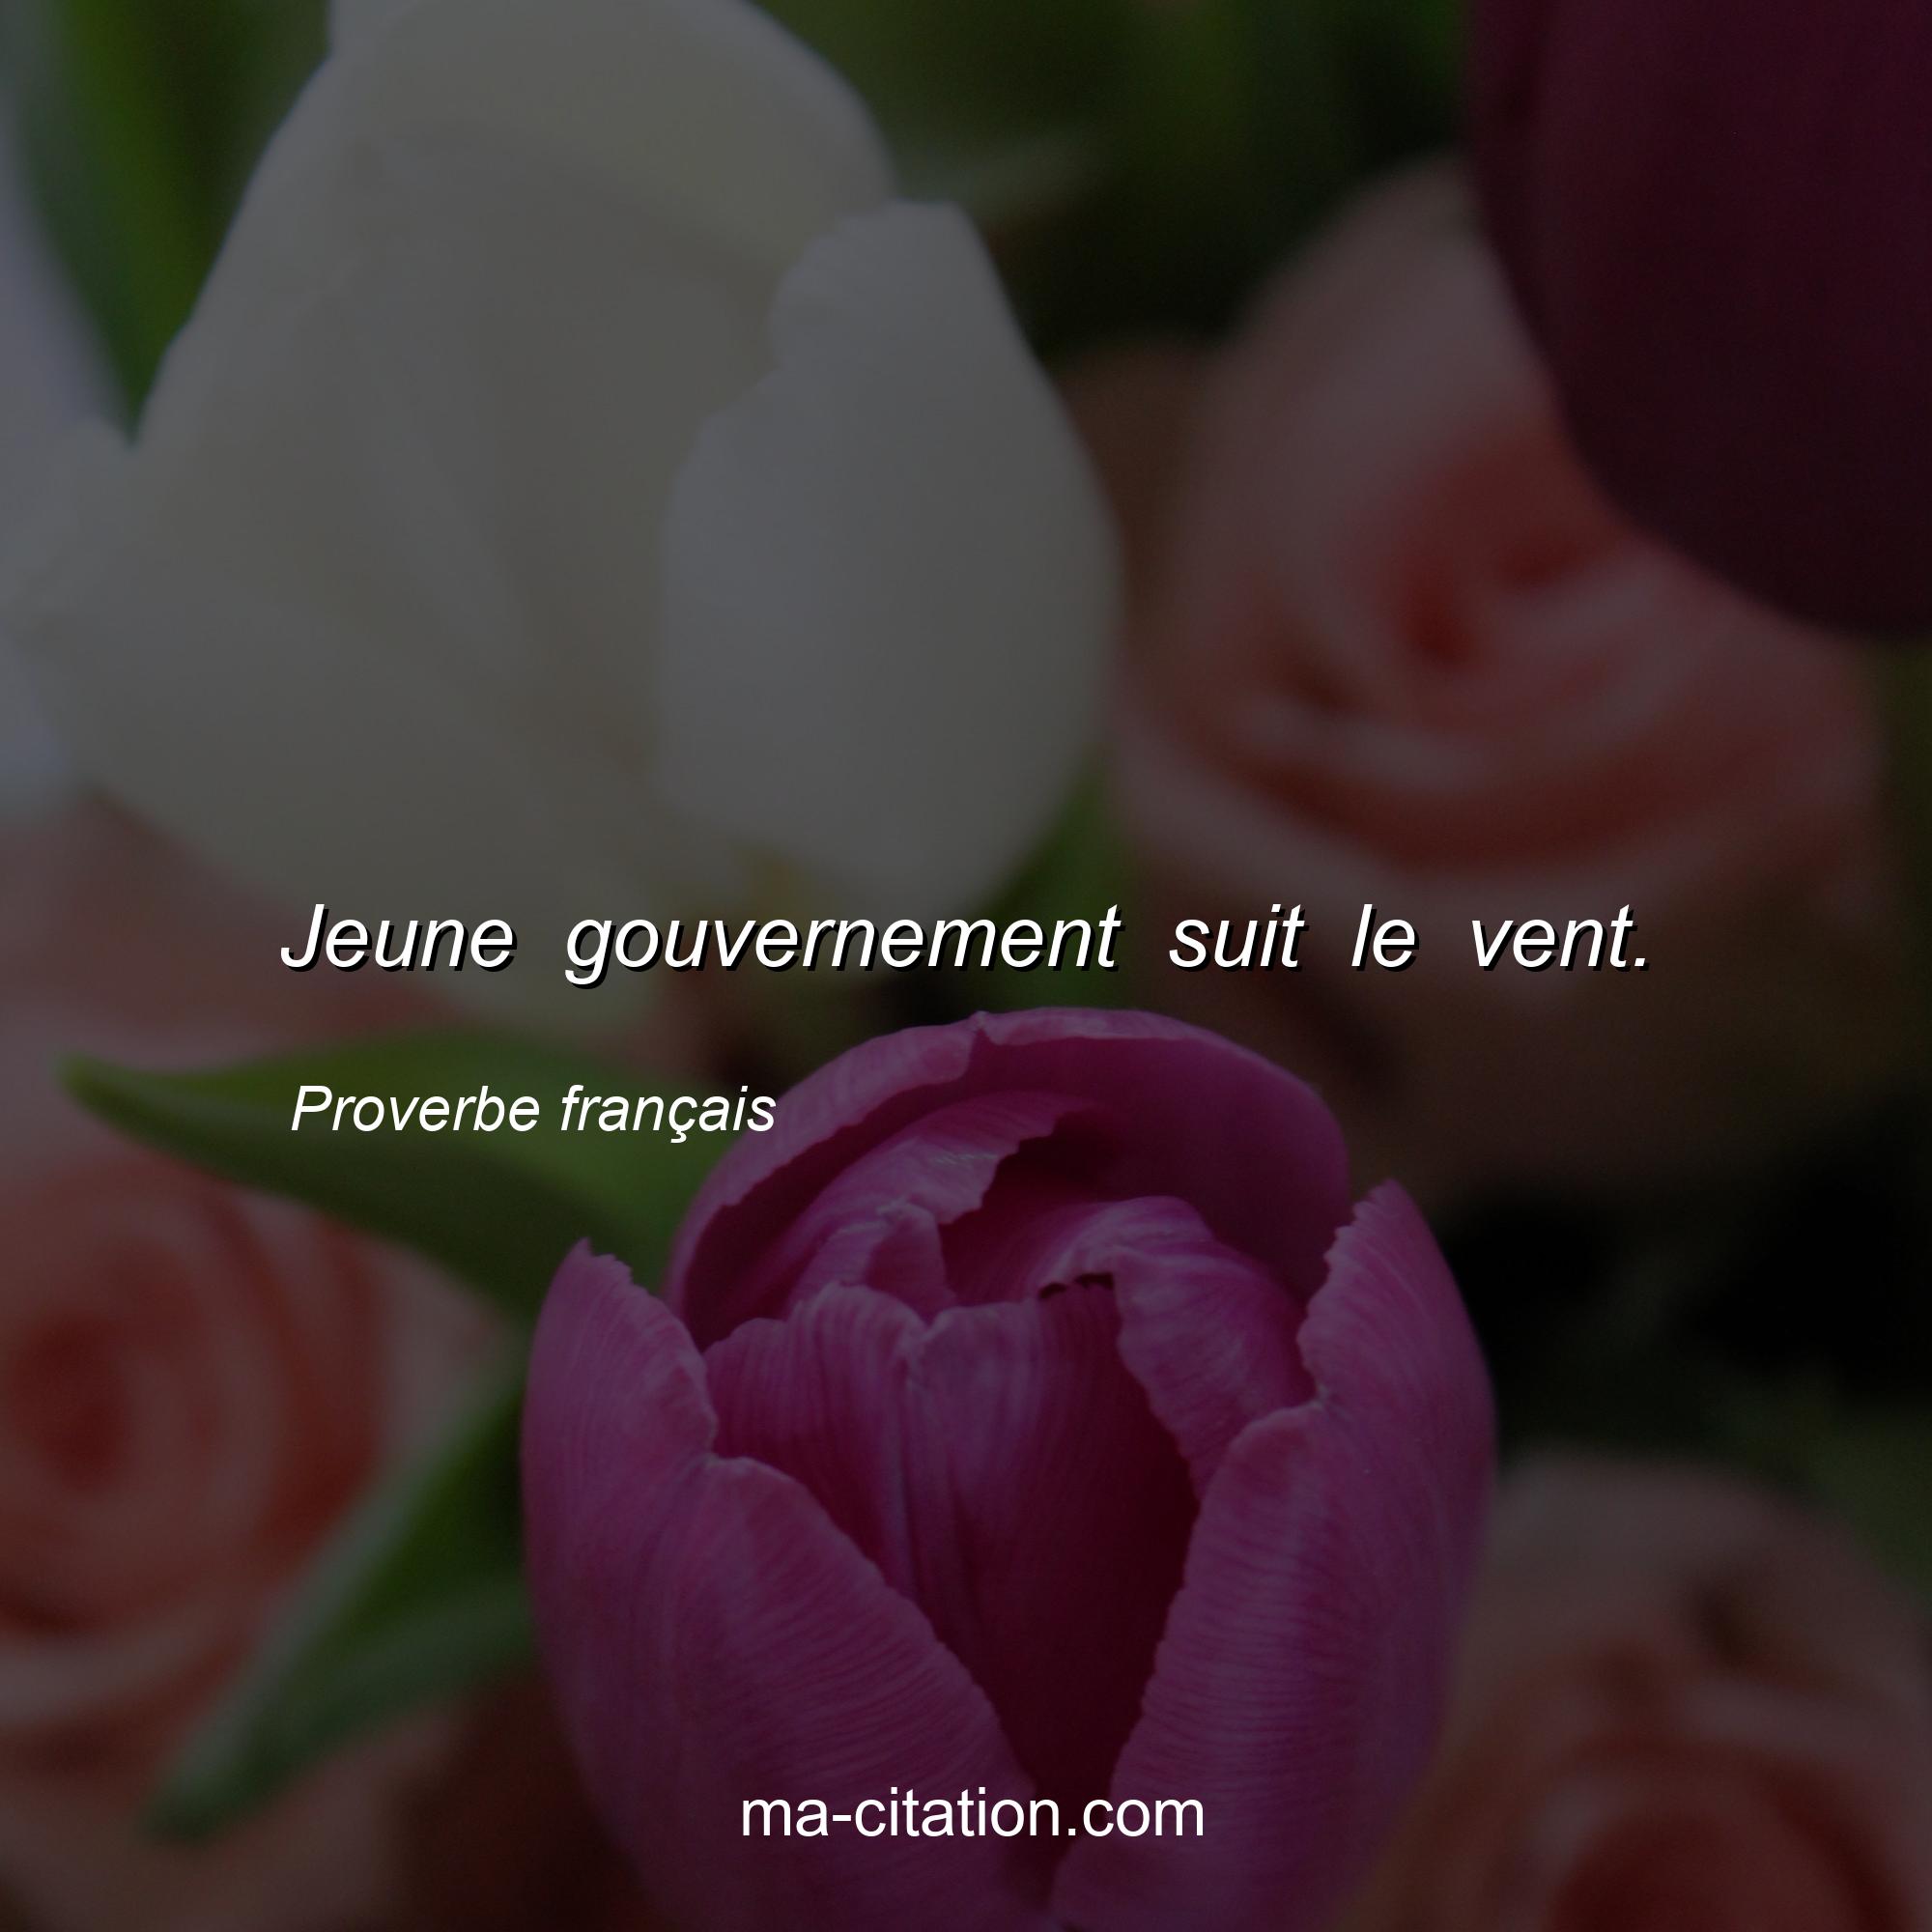 Proverbe français : Jeune gouvernement suit le vent.